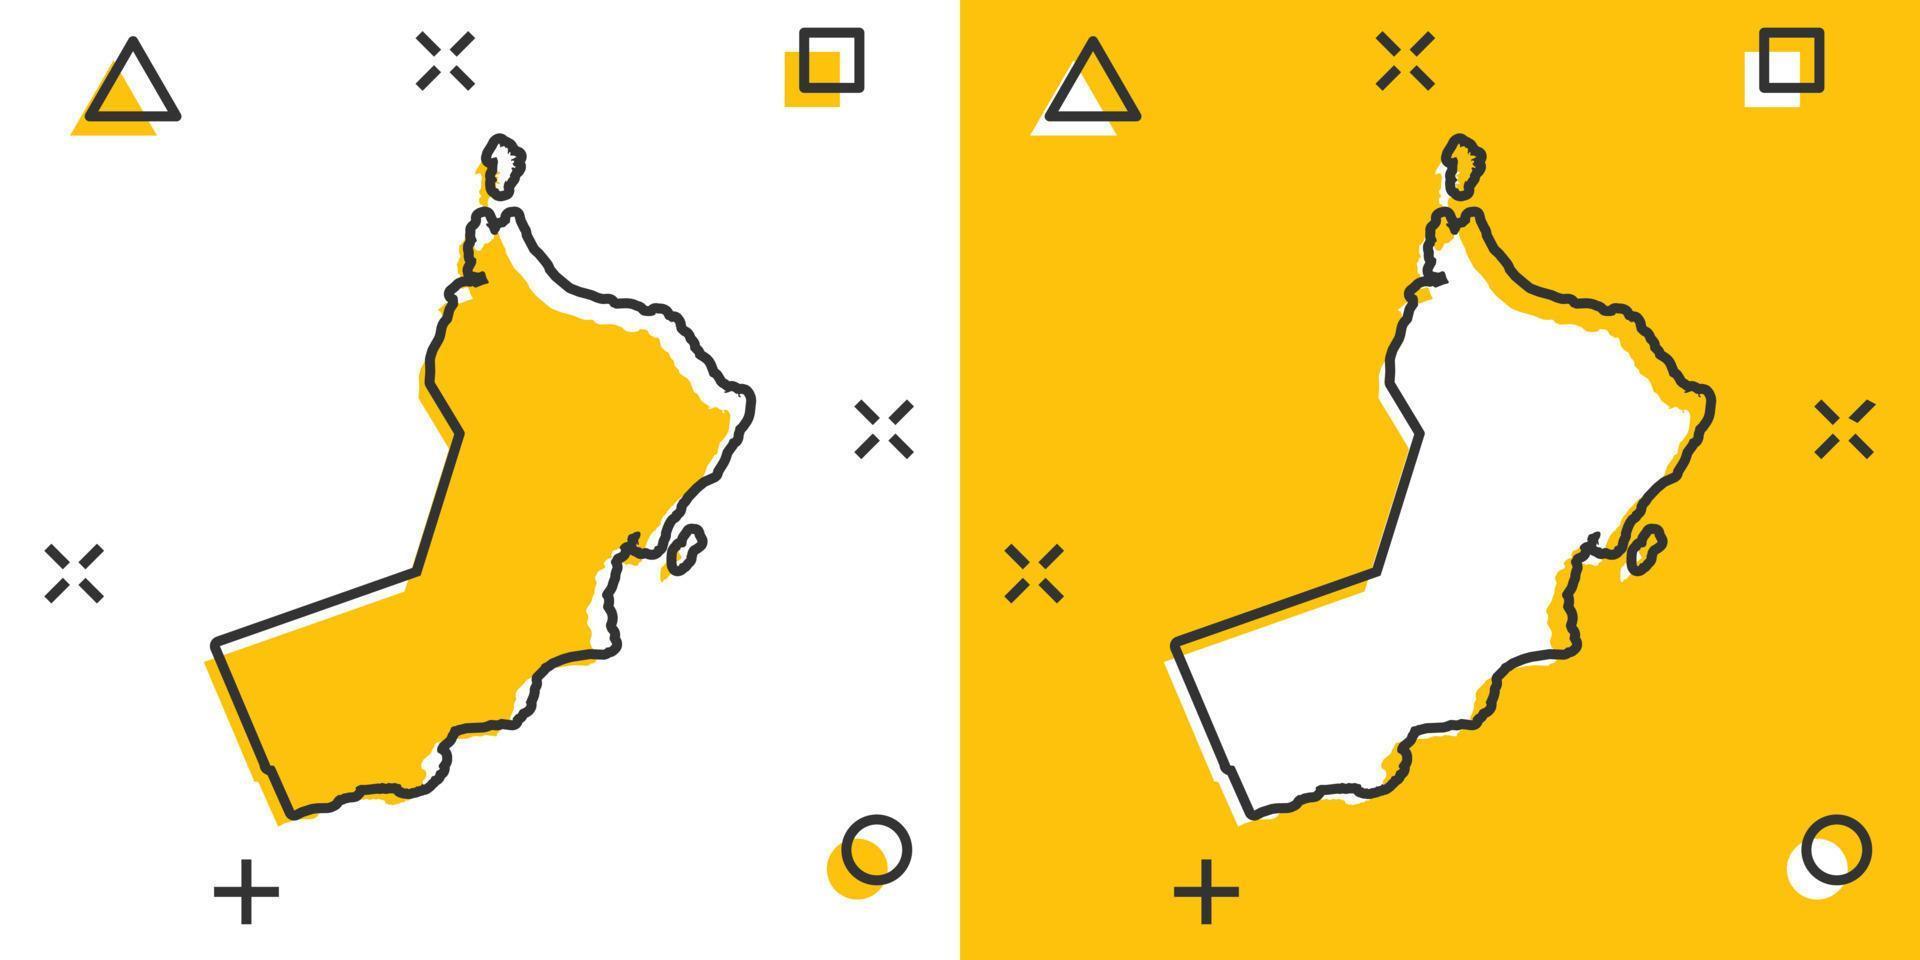 vettore cartone animato Oman carta geografica icona nel comico stile. Oman cartello illustrazione pittogramma. cartografia carta geografica attività commerciale spruzzo effetto concetto.